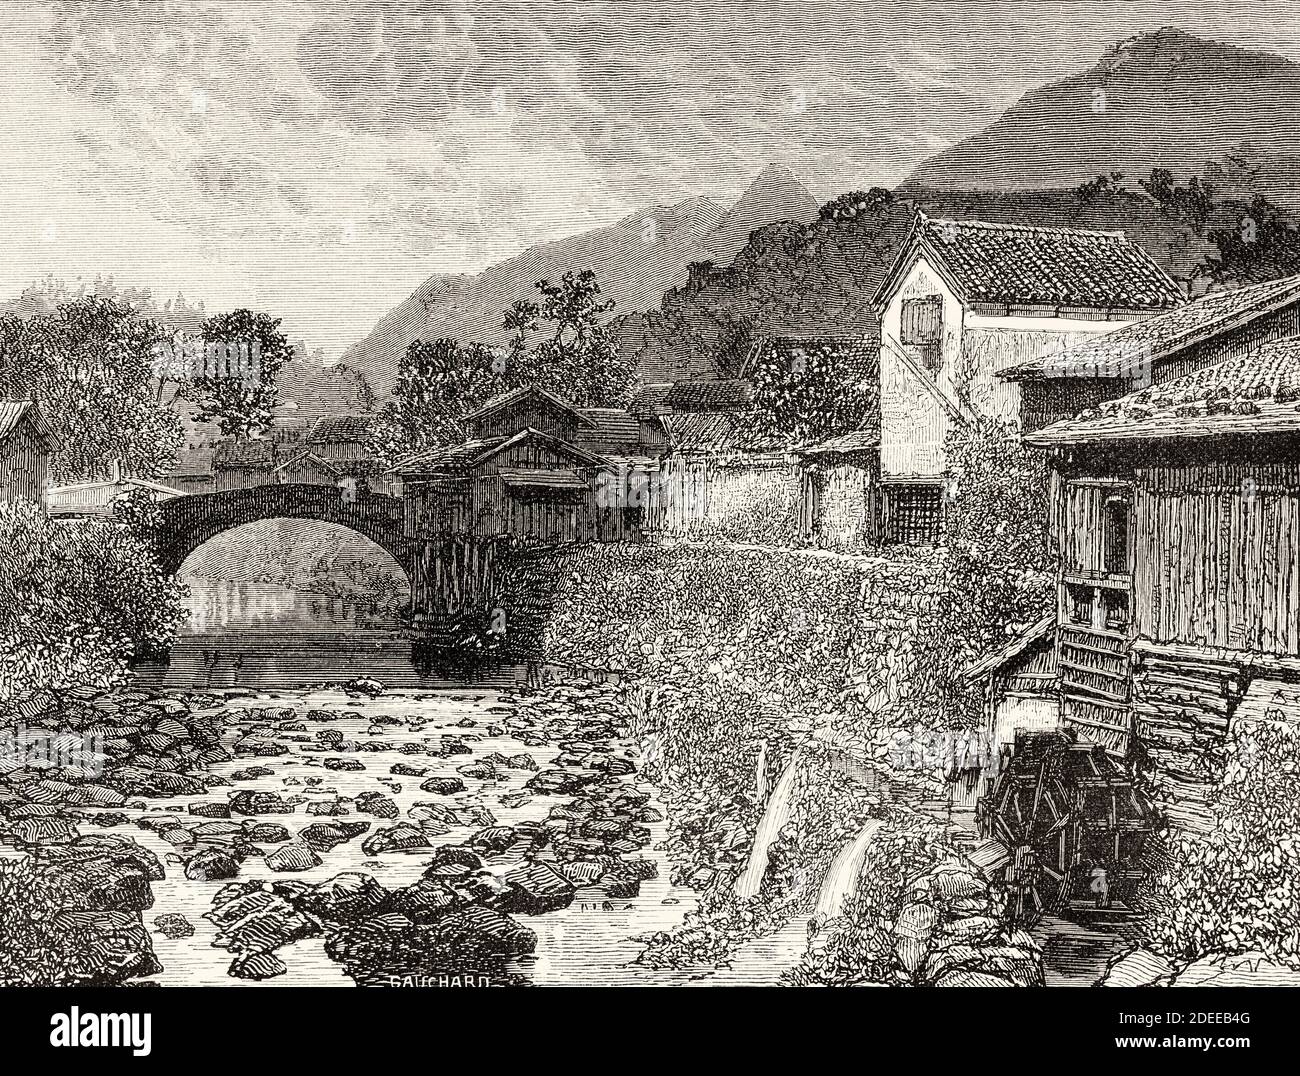 Flusslandschaft auf Kyushu, Japan. Alte Illustration aus dem 19. Jahrhundert Reise nach Japan von Aime Humbert aus El Mundo en La Mano 1879 Stockfoto